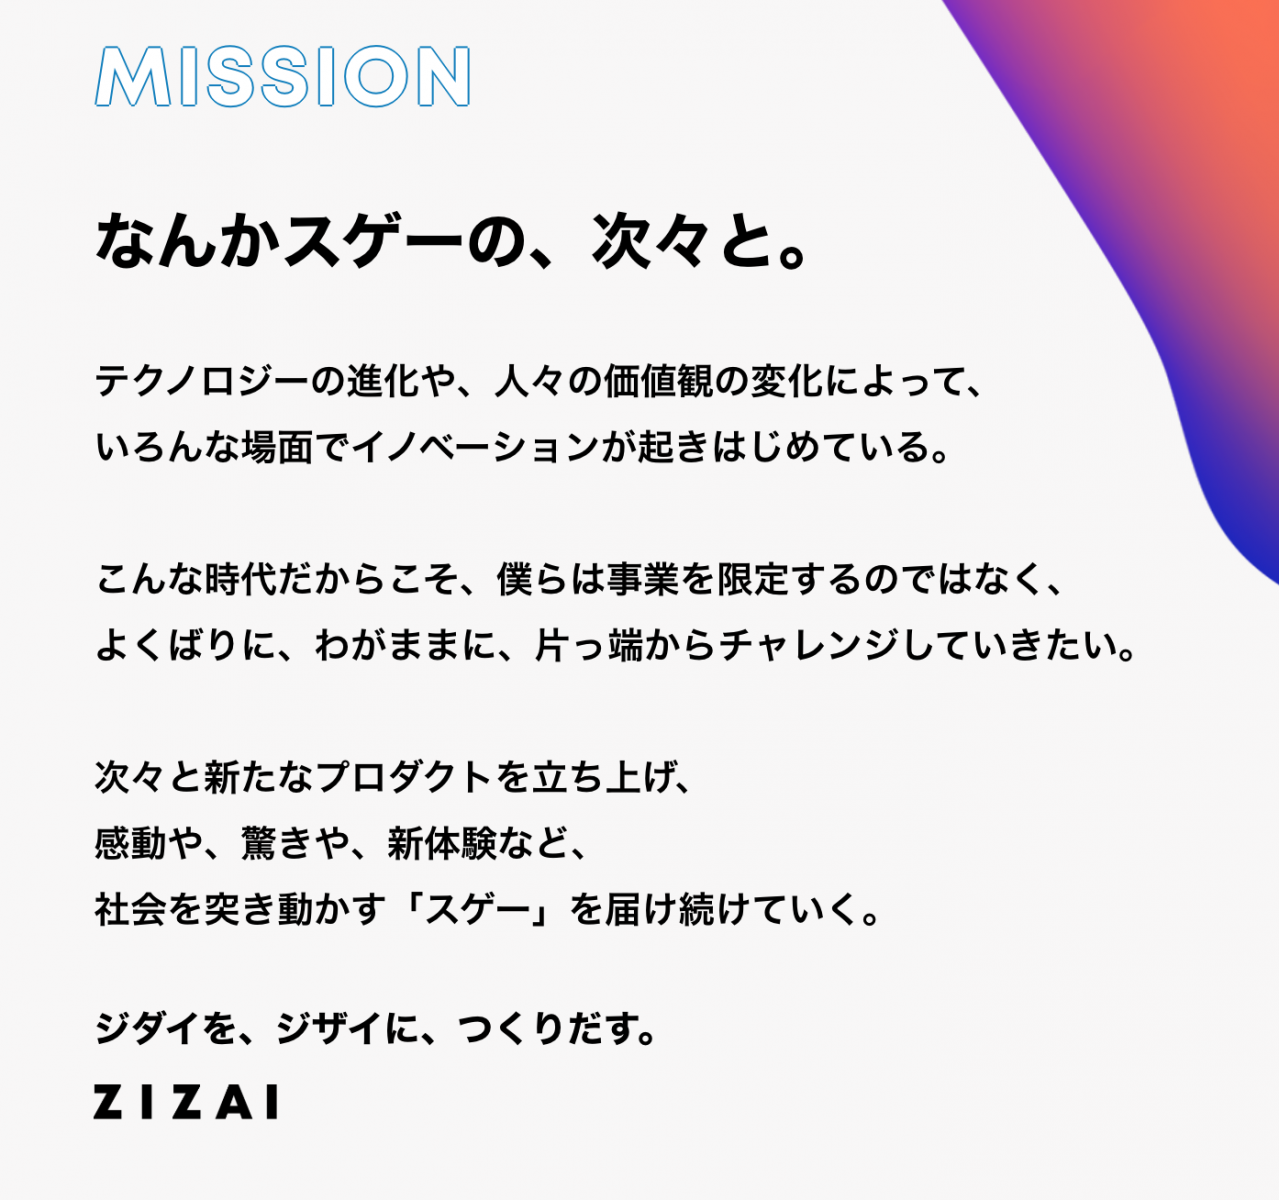 株式会社ZIZAIのミッション